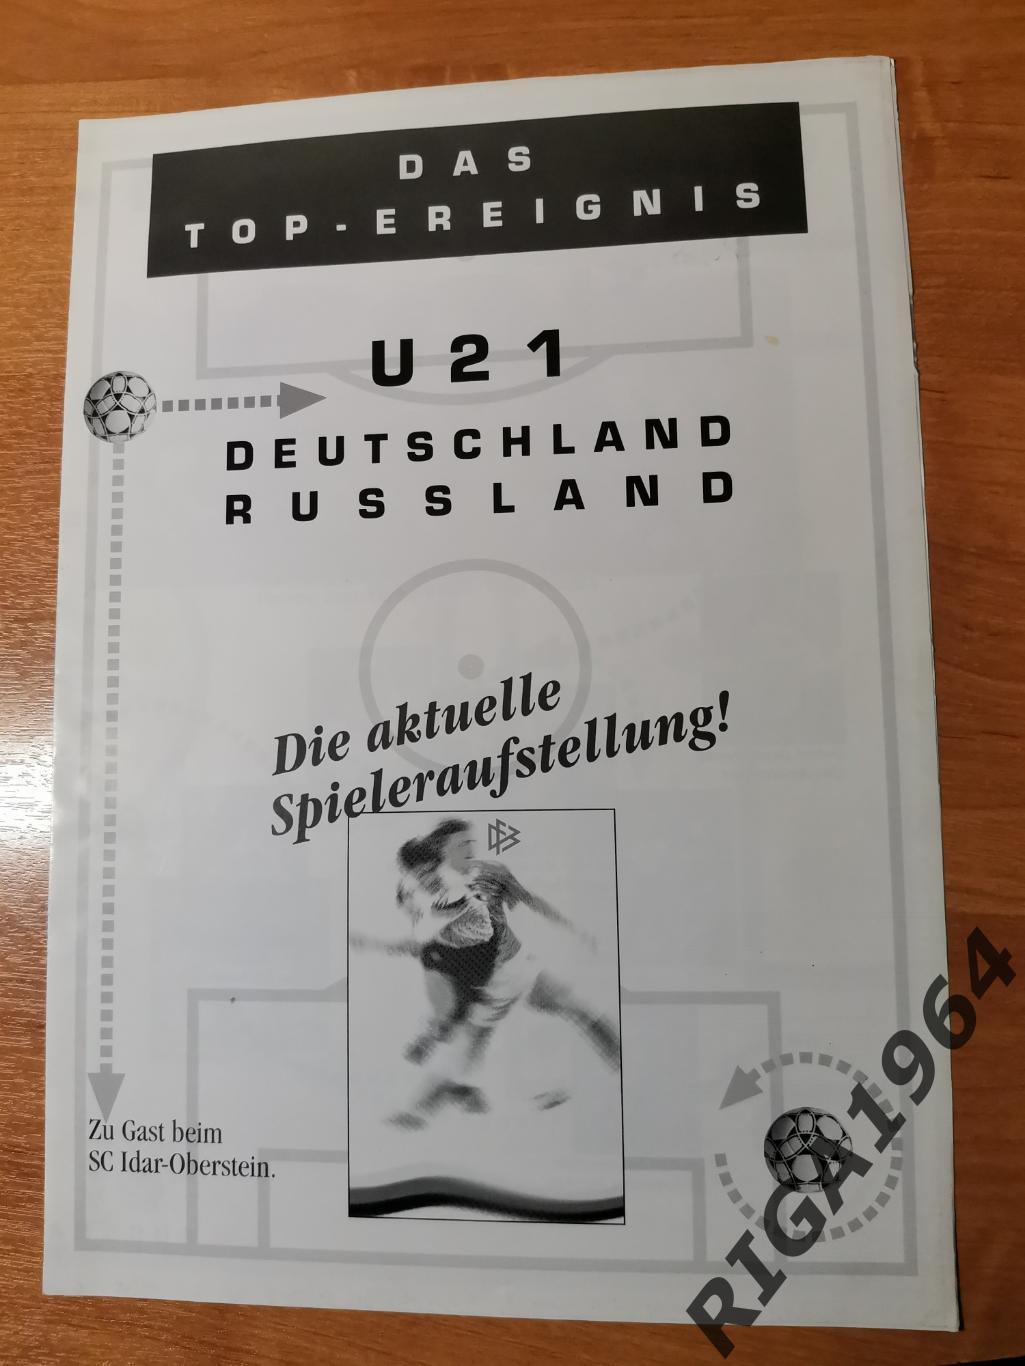 Товарищеский матч U-21 Германия-Россия (19.08.1997) см.описание 1